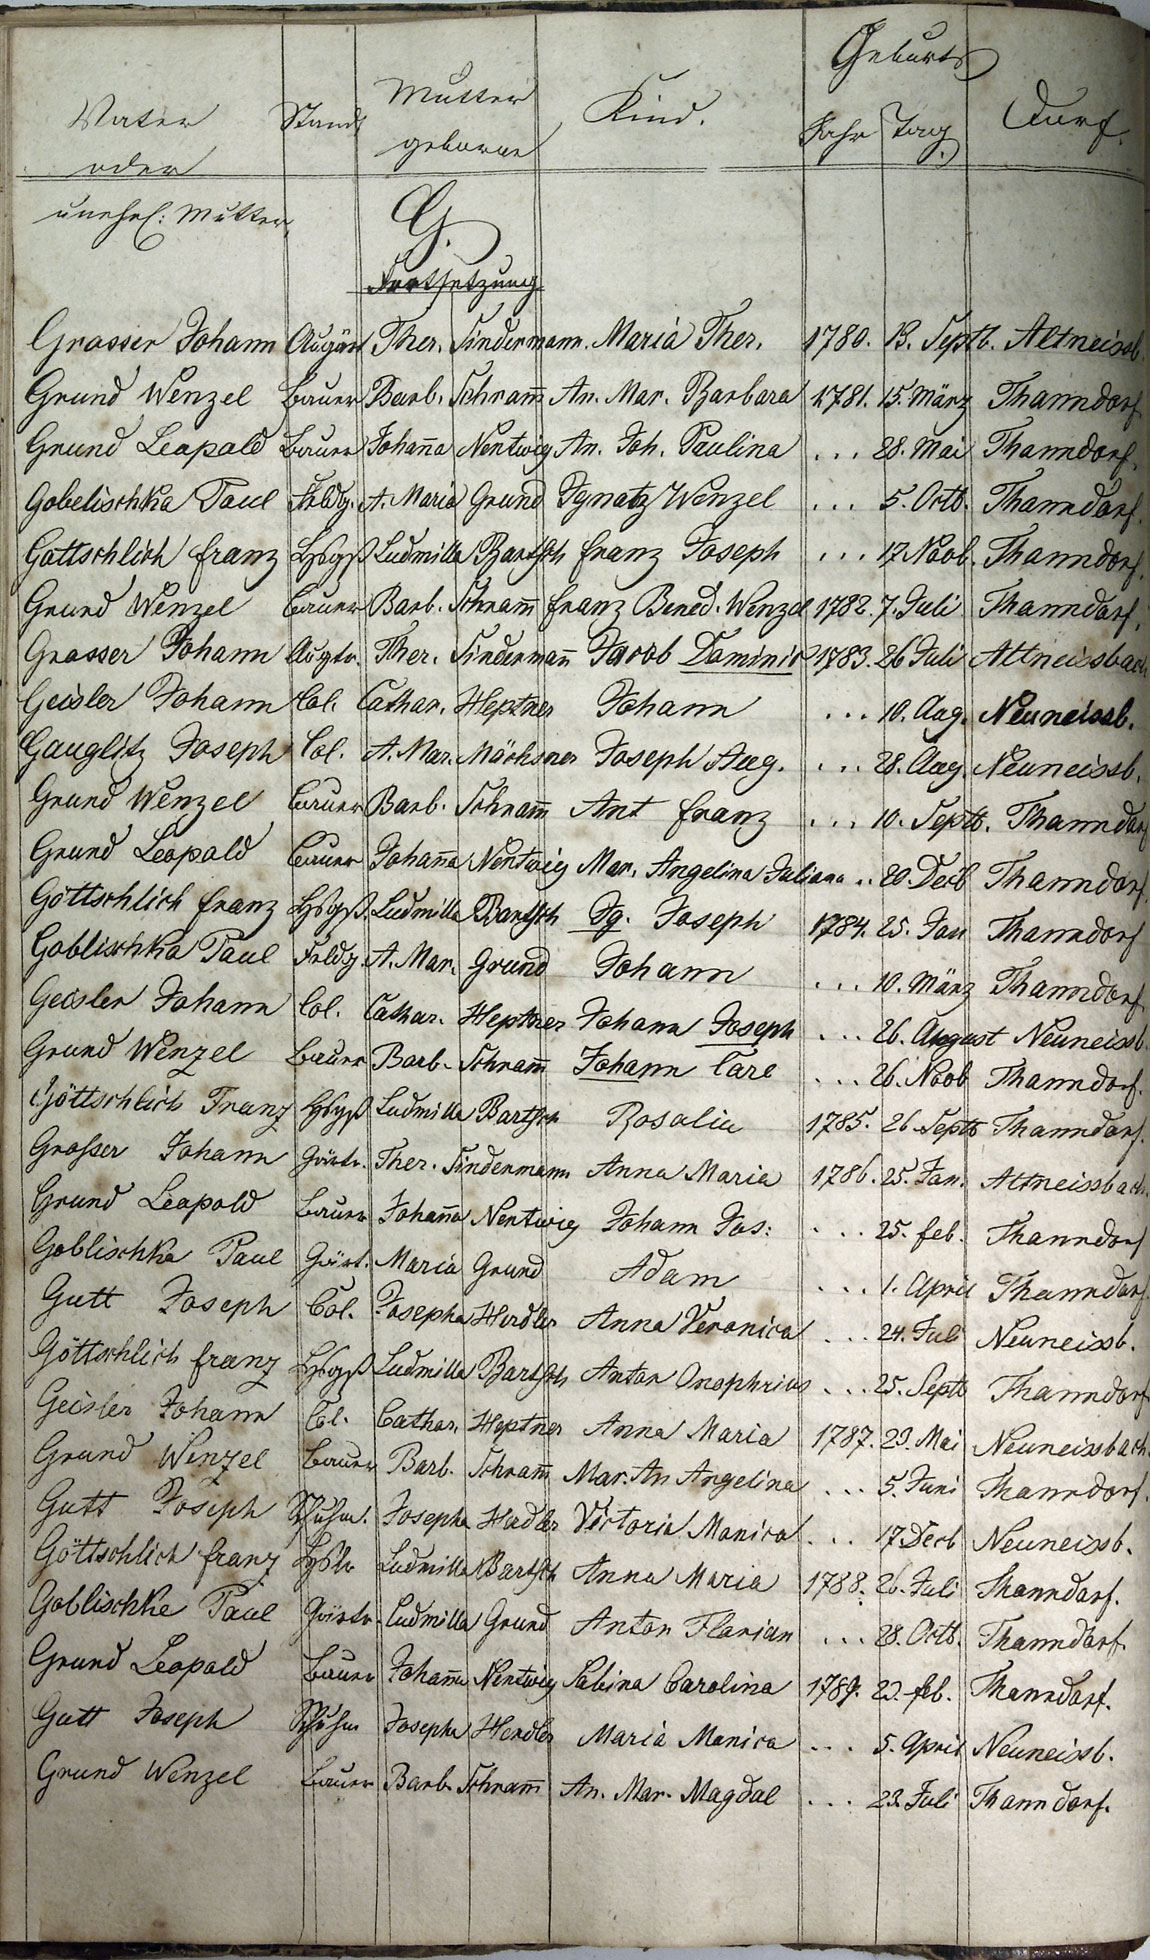 Taufregister 1770 - 1889 Seite 36